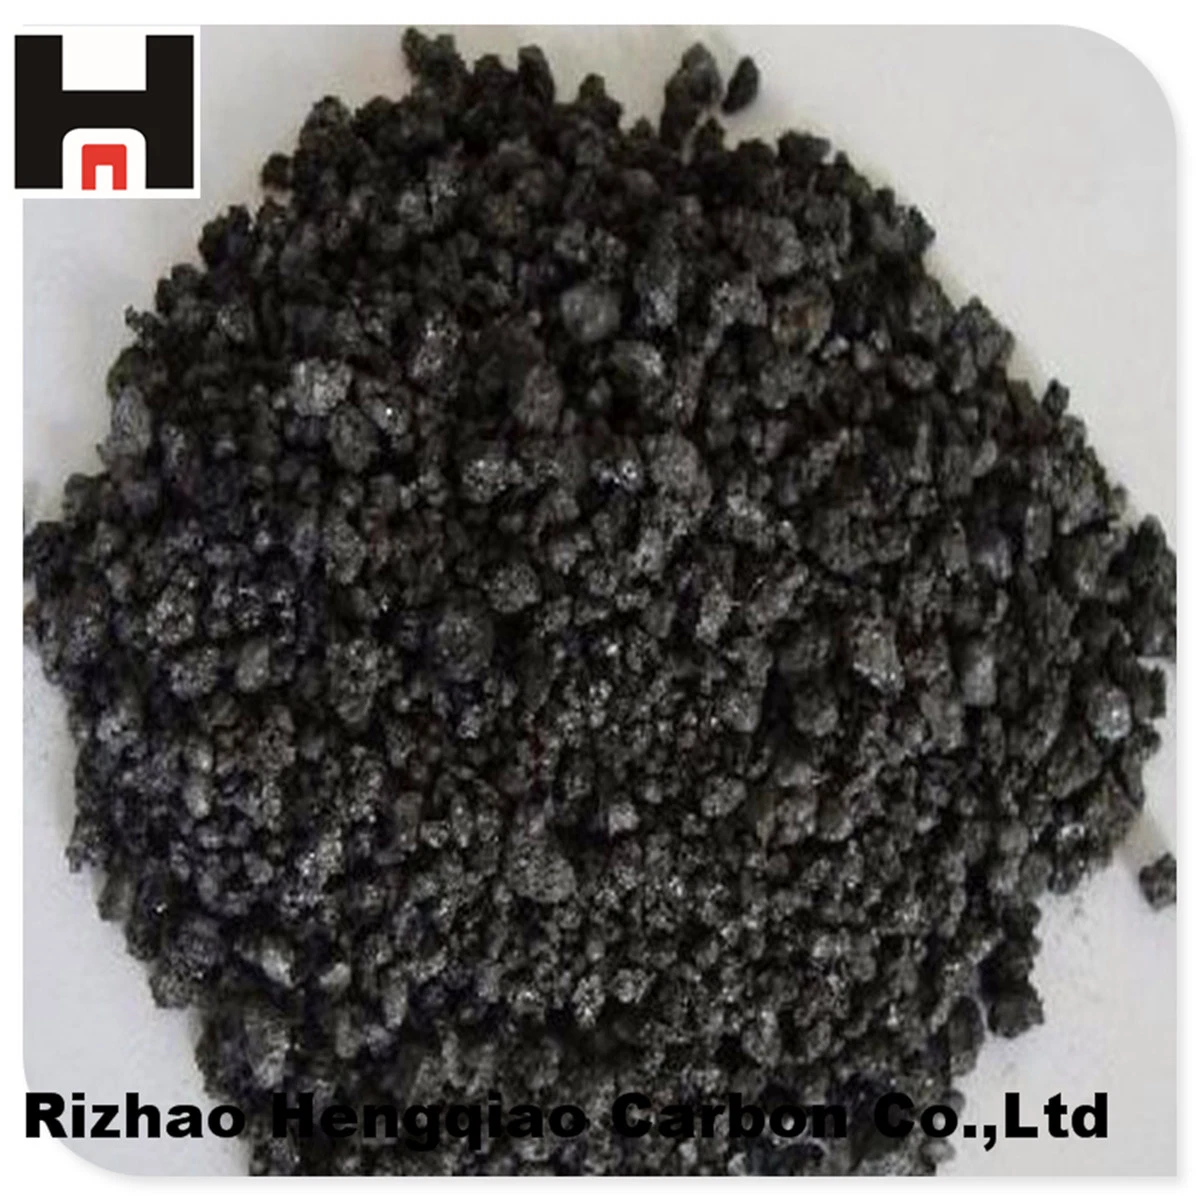 High Carbon Low Sulphur Artificial Graphite Pet Coke Powder Product